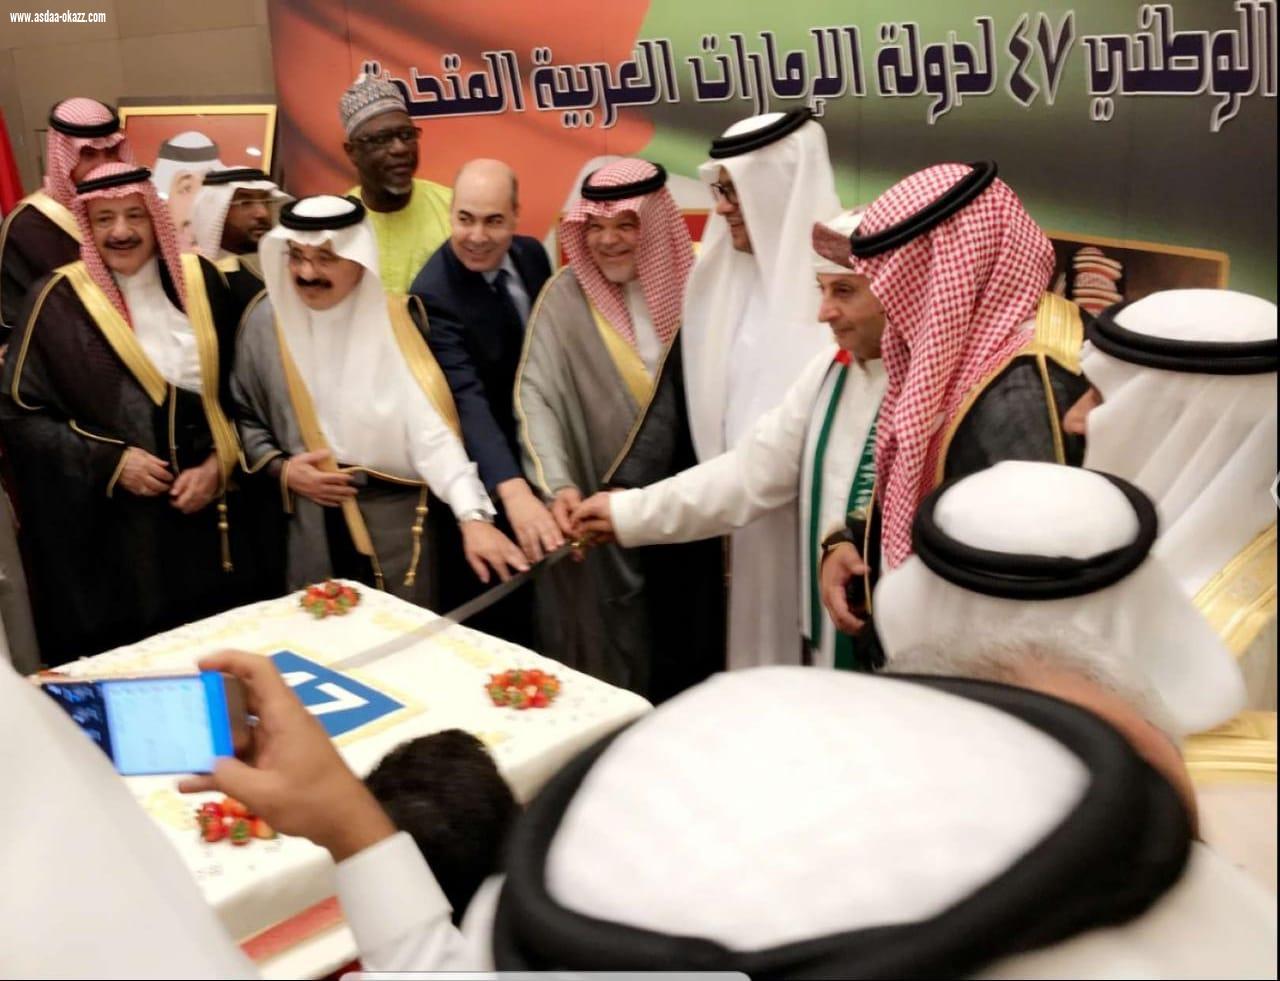 قنصلية دولة الإمارات بجدة تحتفل باليوم الوطني الـ47 لدولة